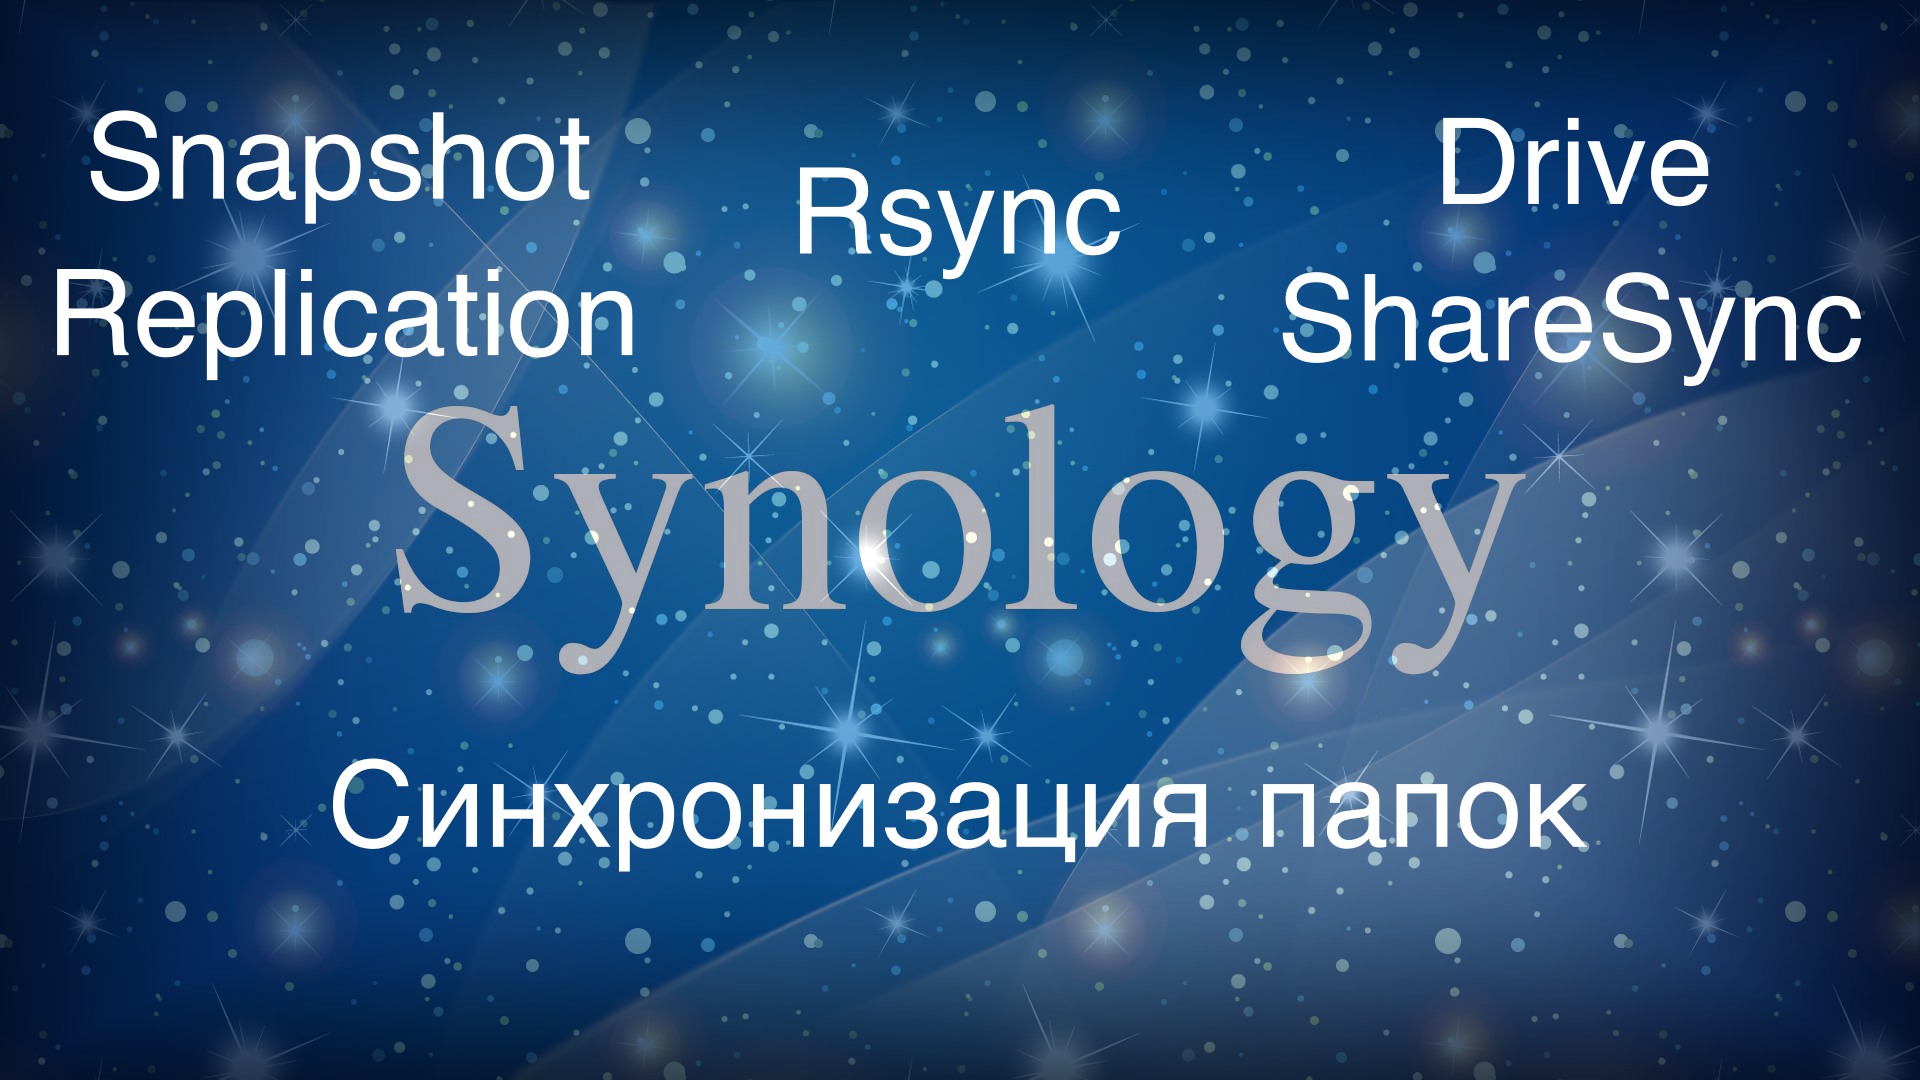 Synology синхронизация папок или как передать данные с одного NAS на другой